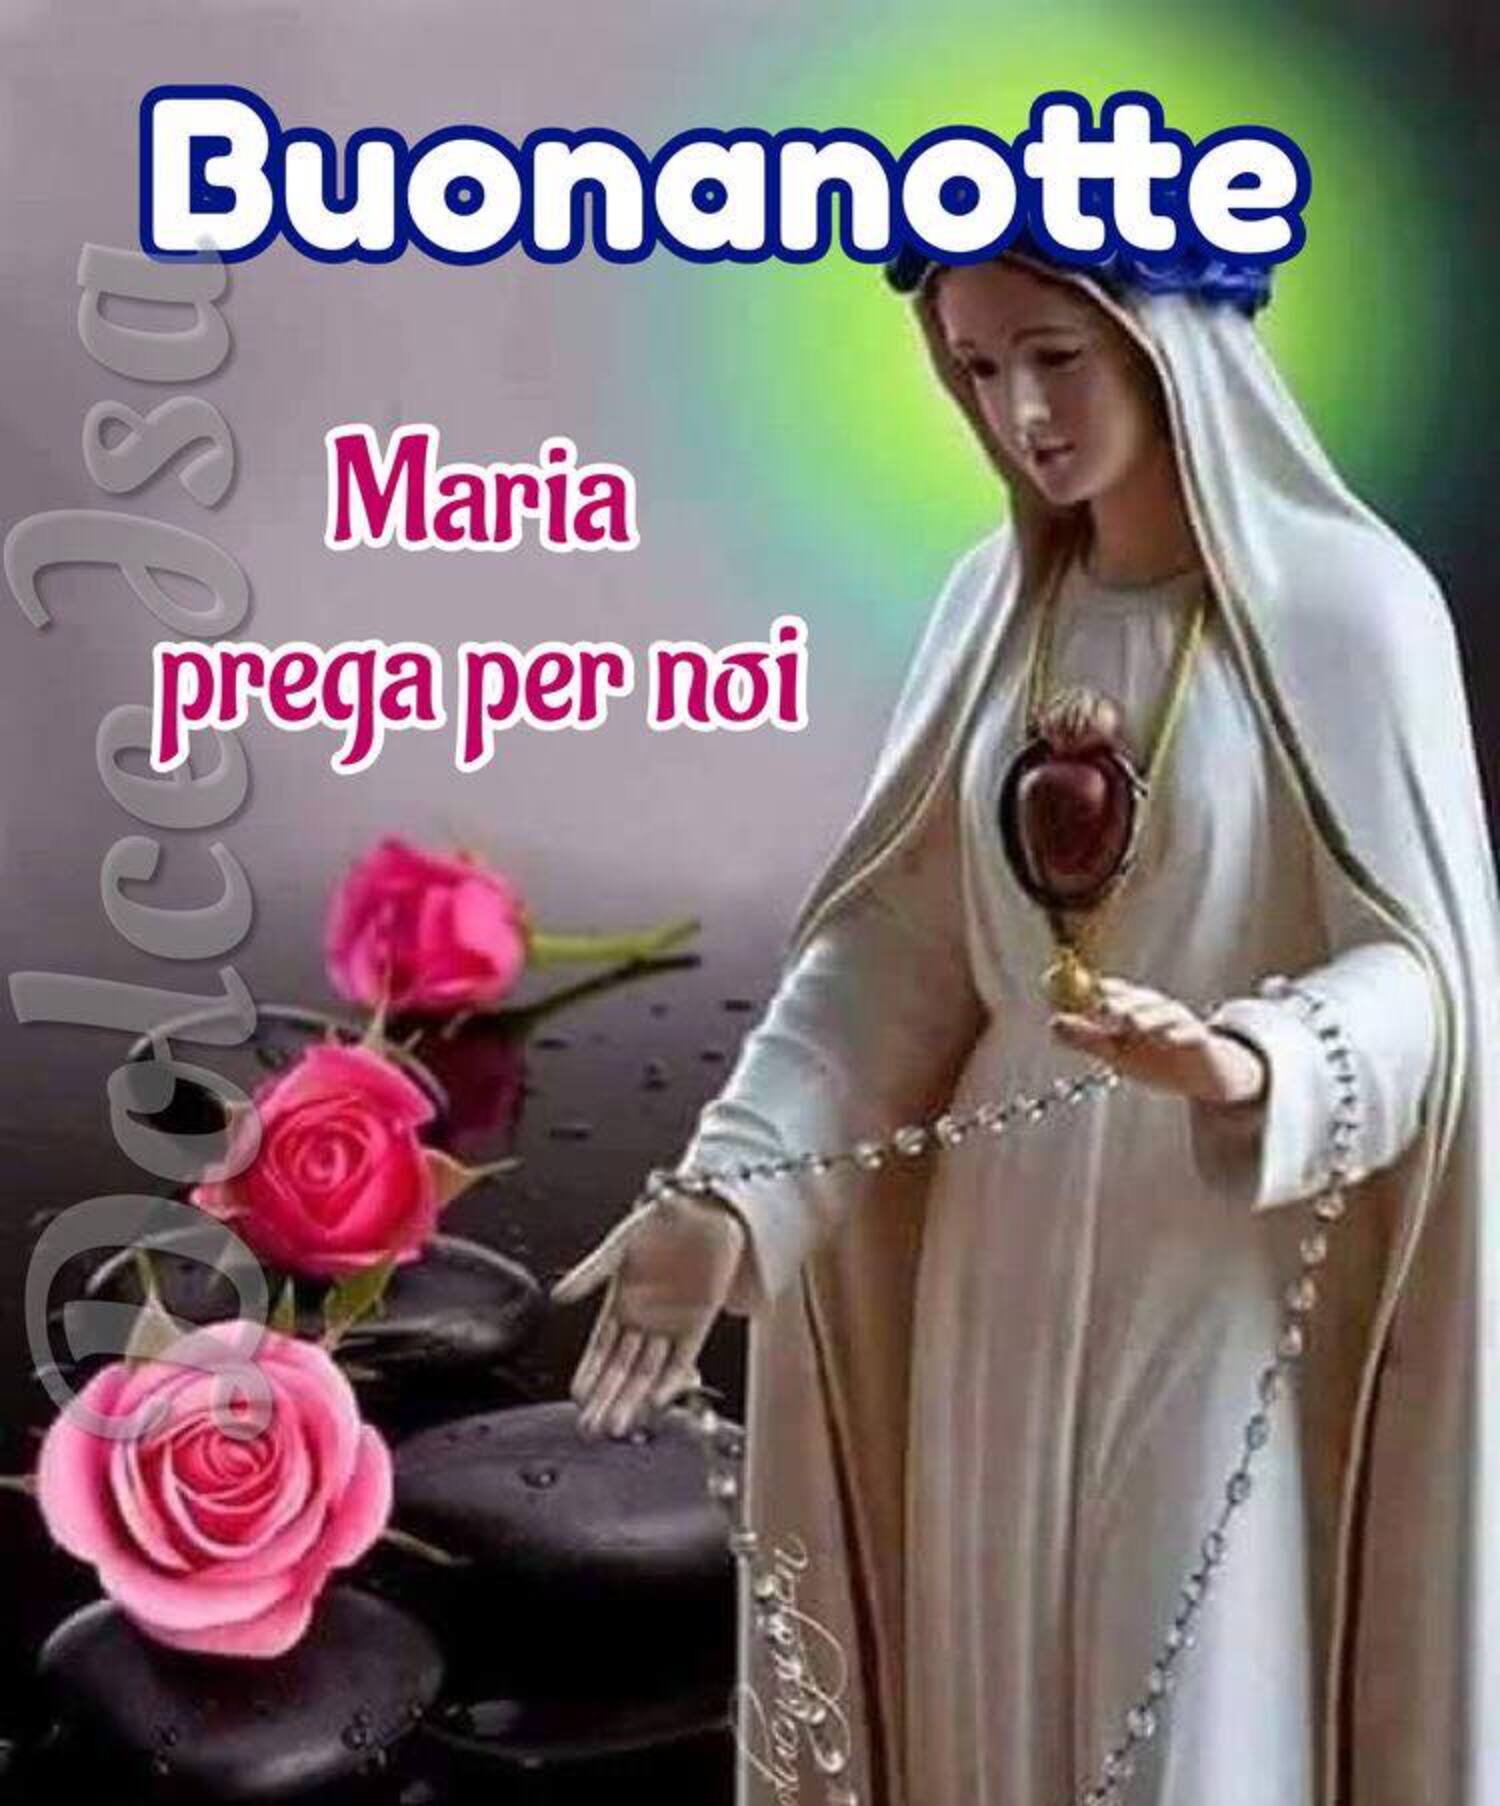 Buona notte Maria prega per noi